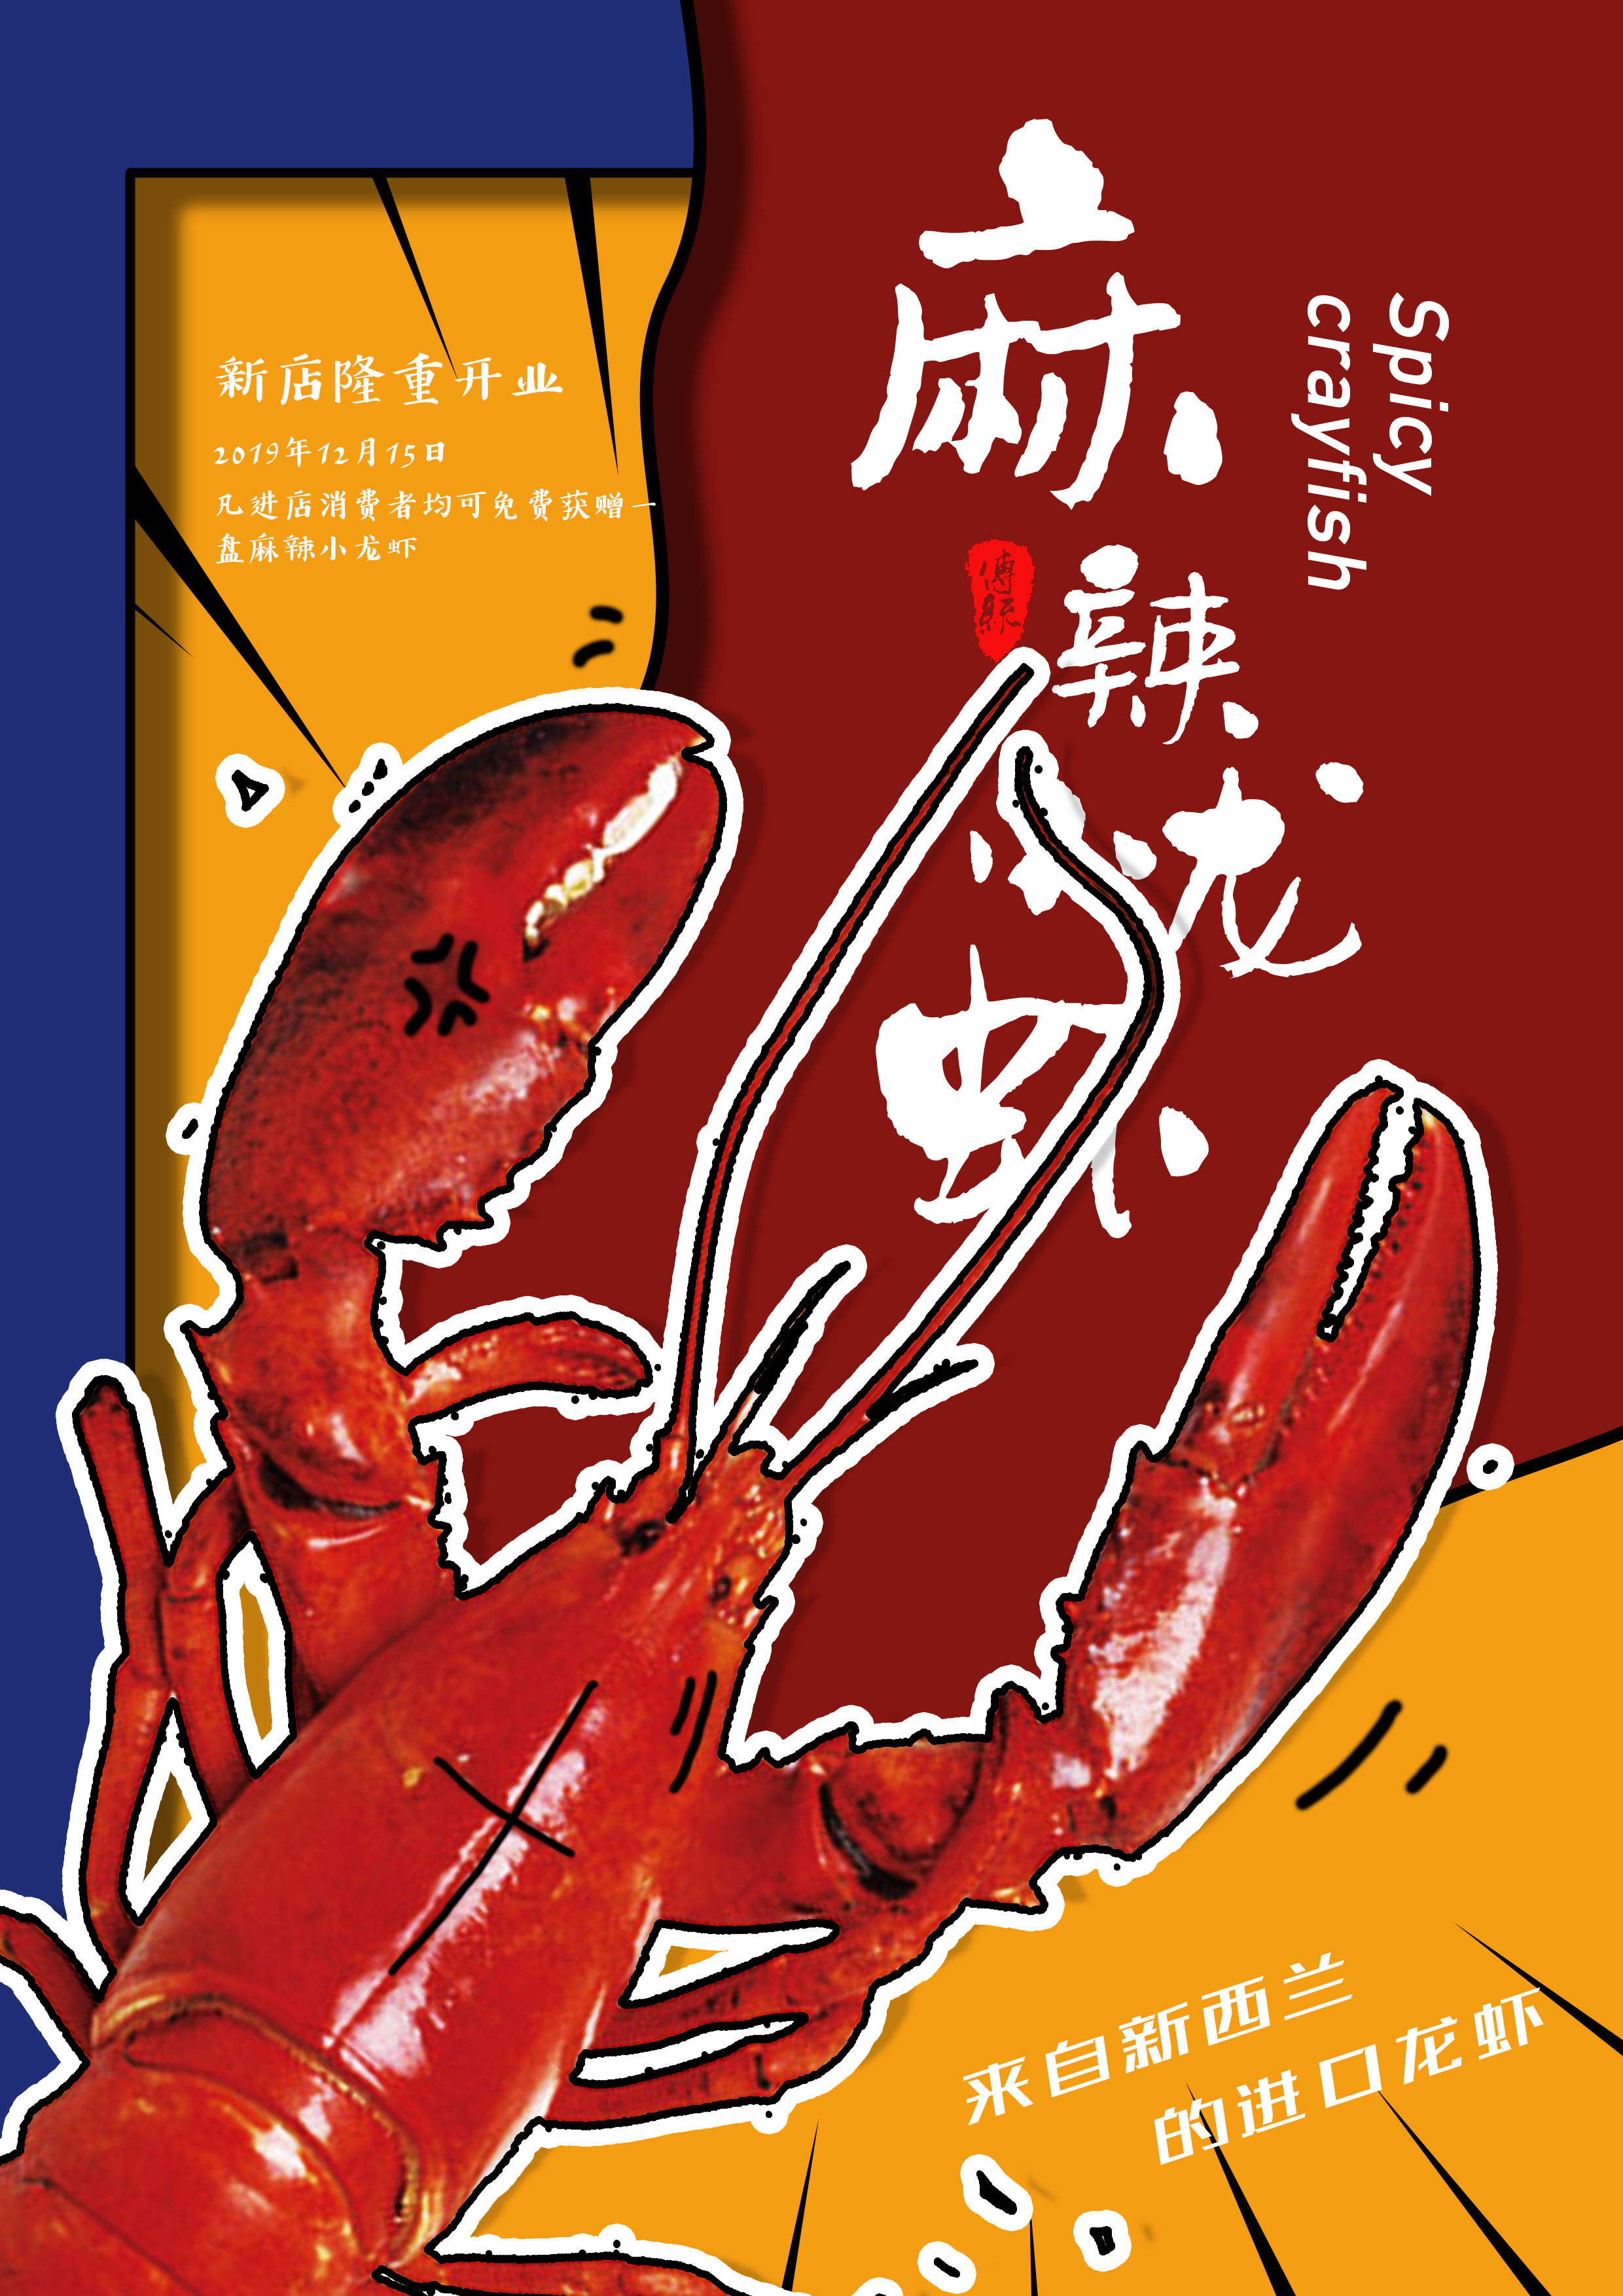 地产小龙虾活动微单PSD广告设计素材海报模板免费下载-享设计